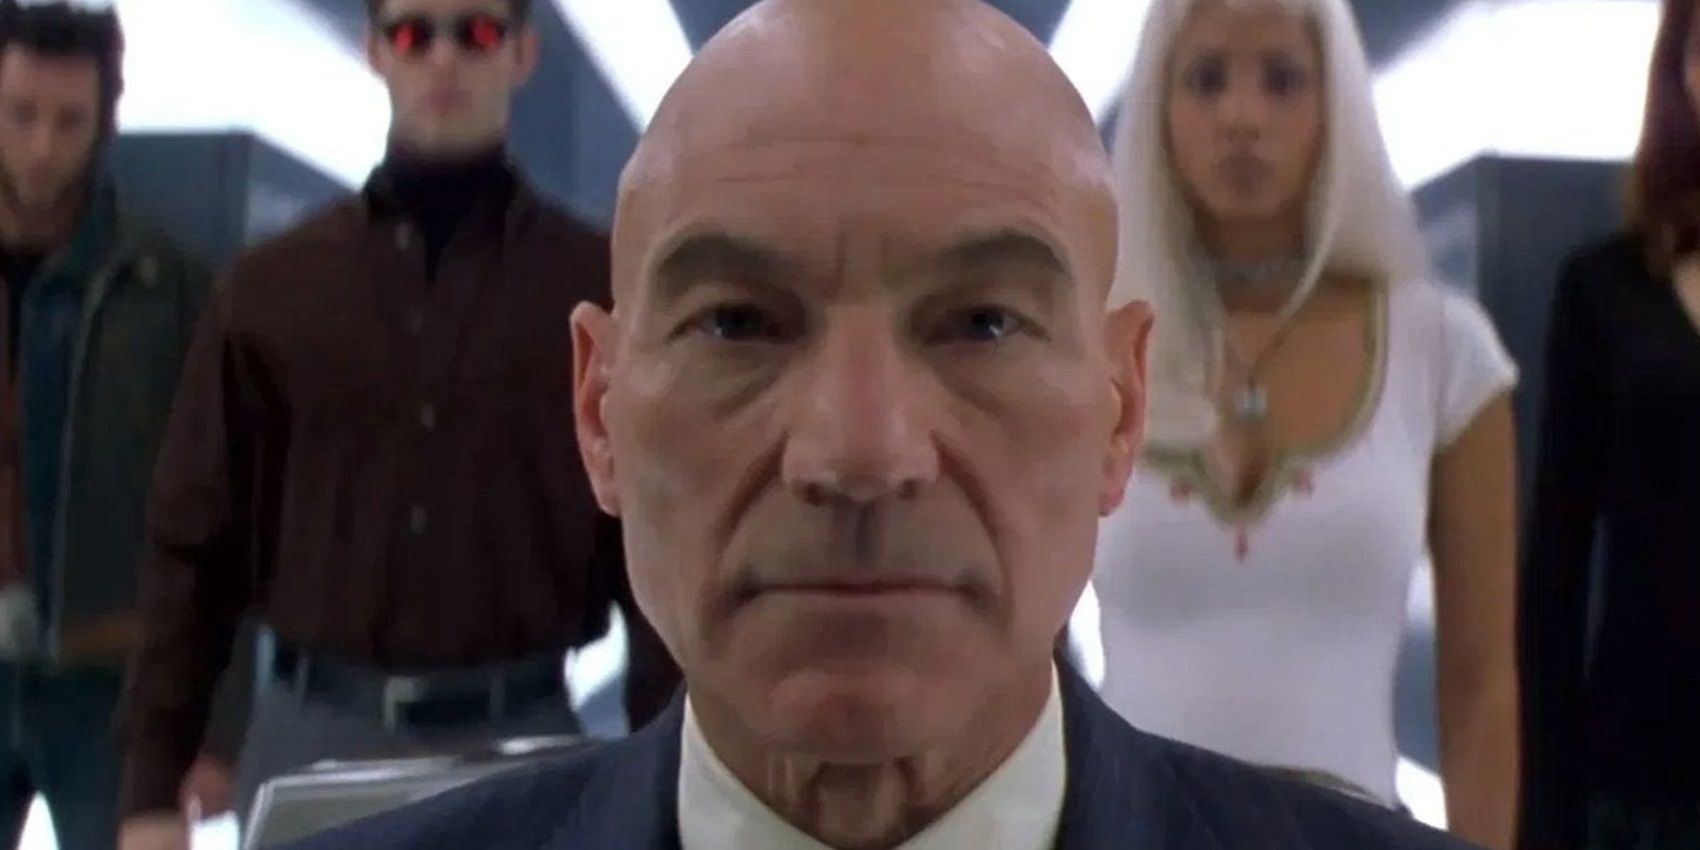 Patrick Stewart as Professor X in the Cerebro in X-Men